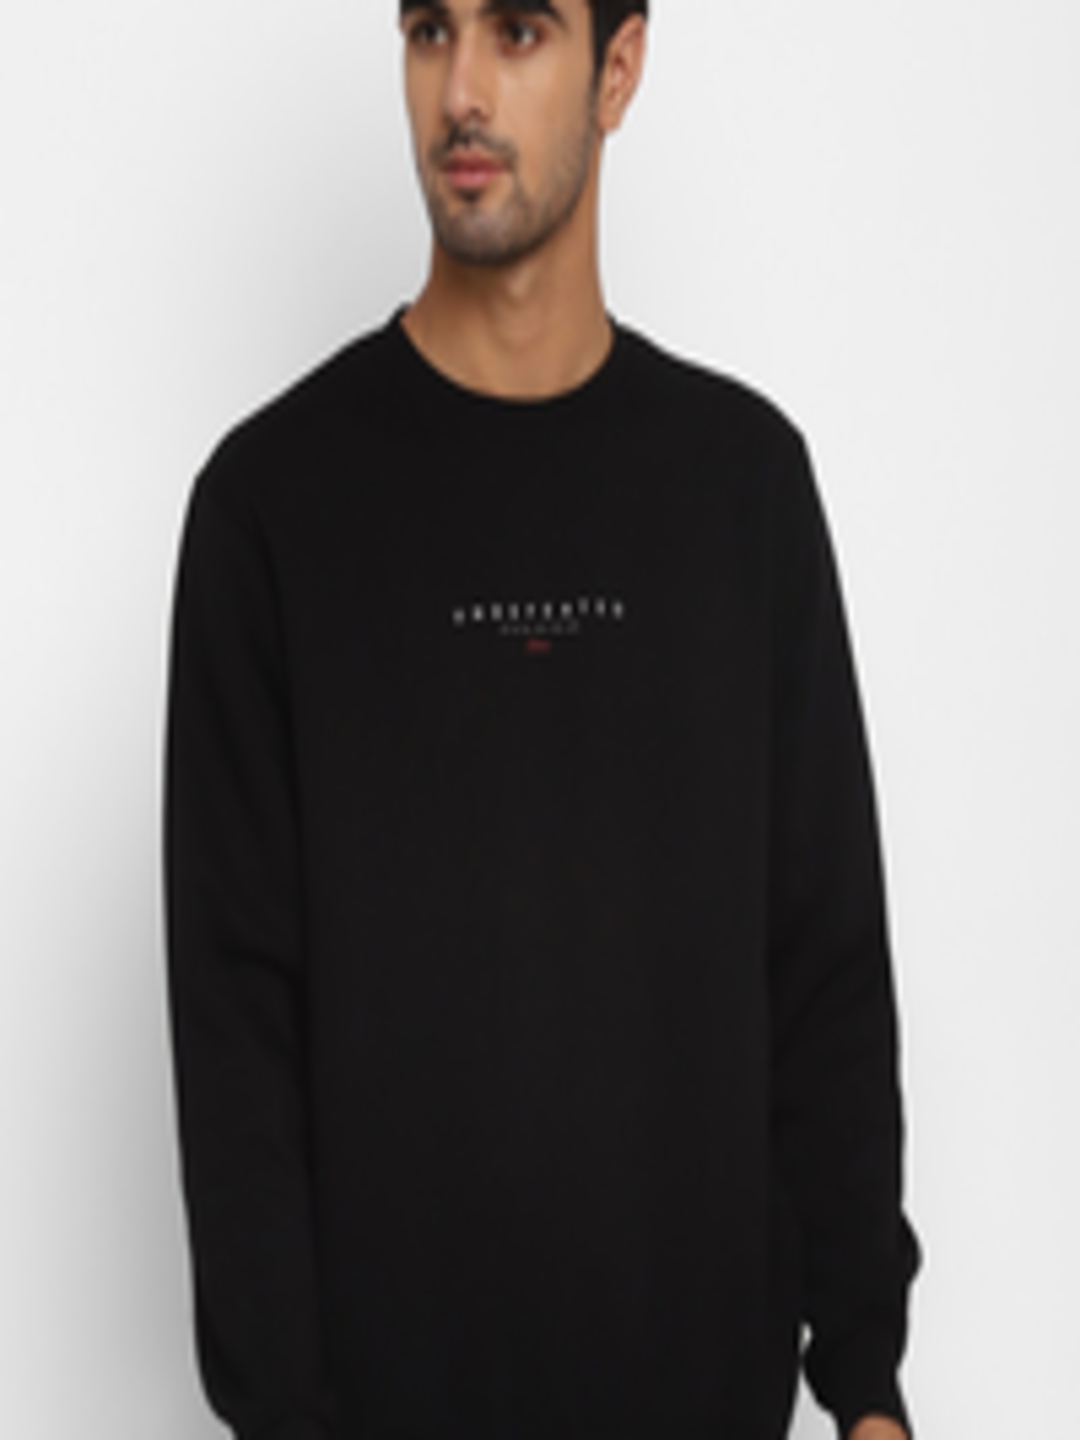 Buy Octave Men Black Solid Sweatshirt - Sweatshirts for Men 12747556 ...